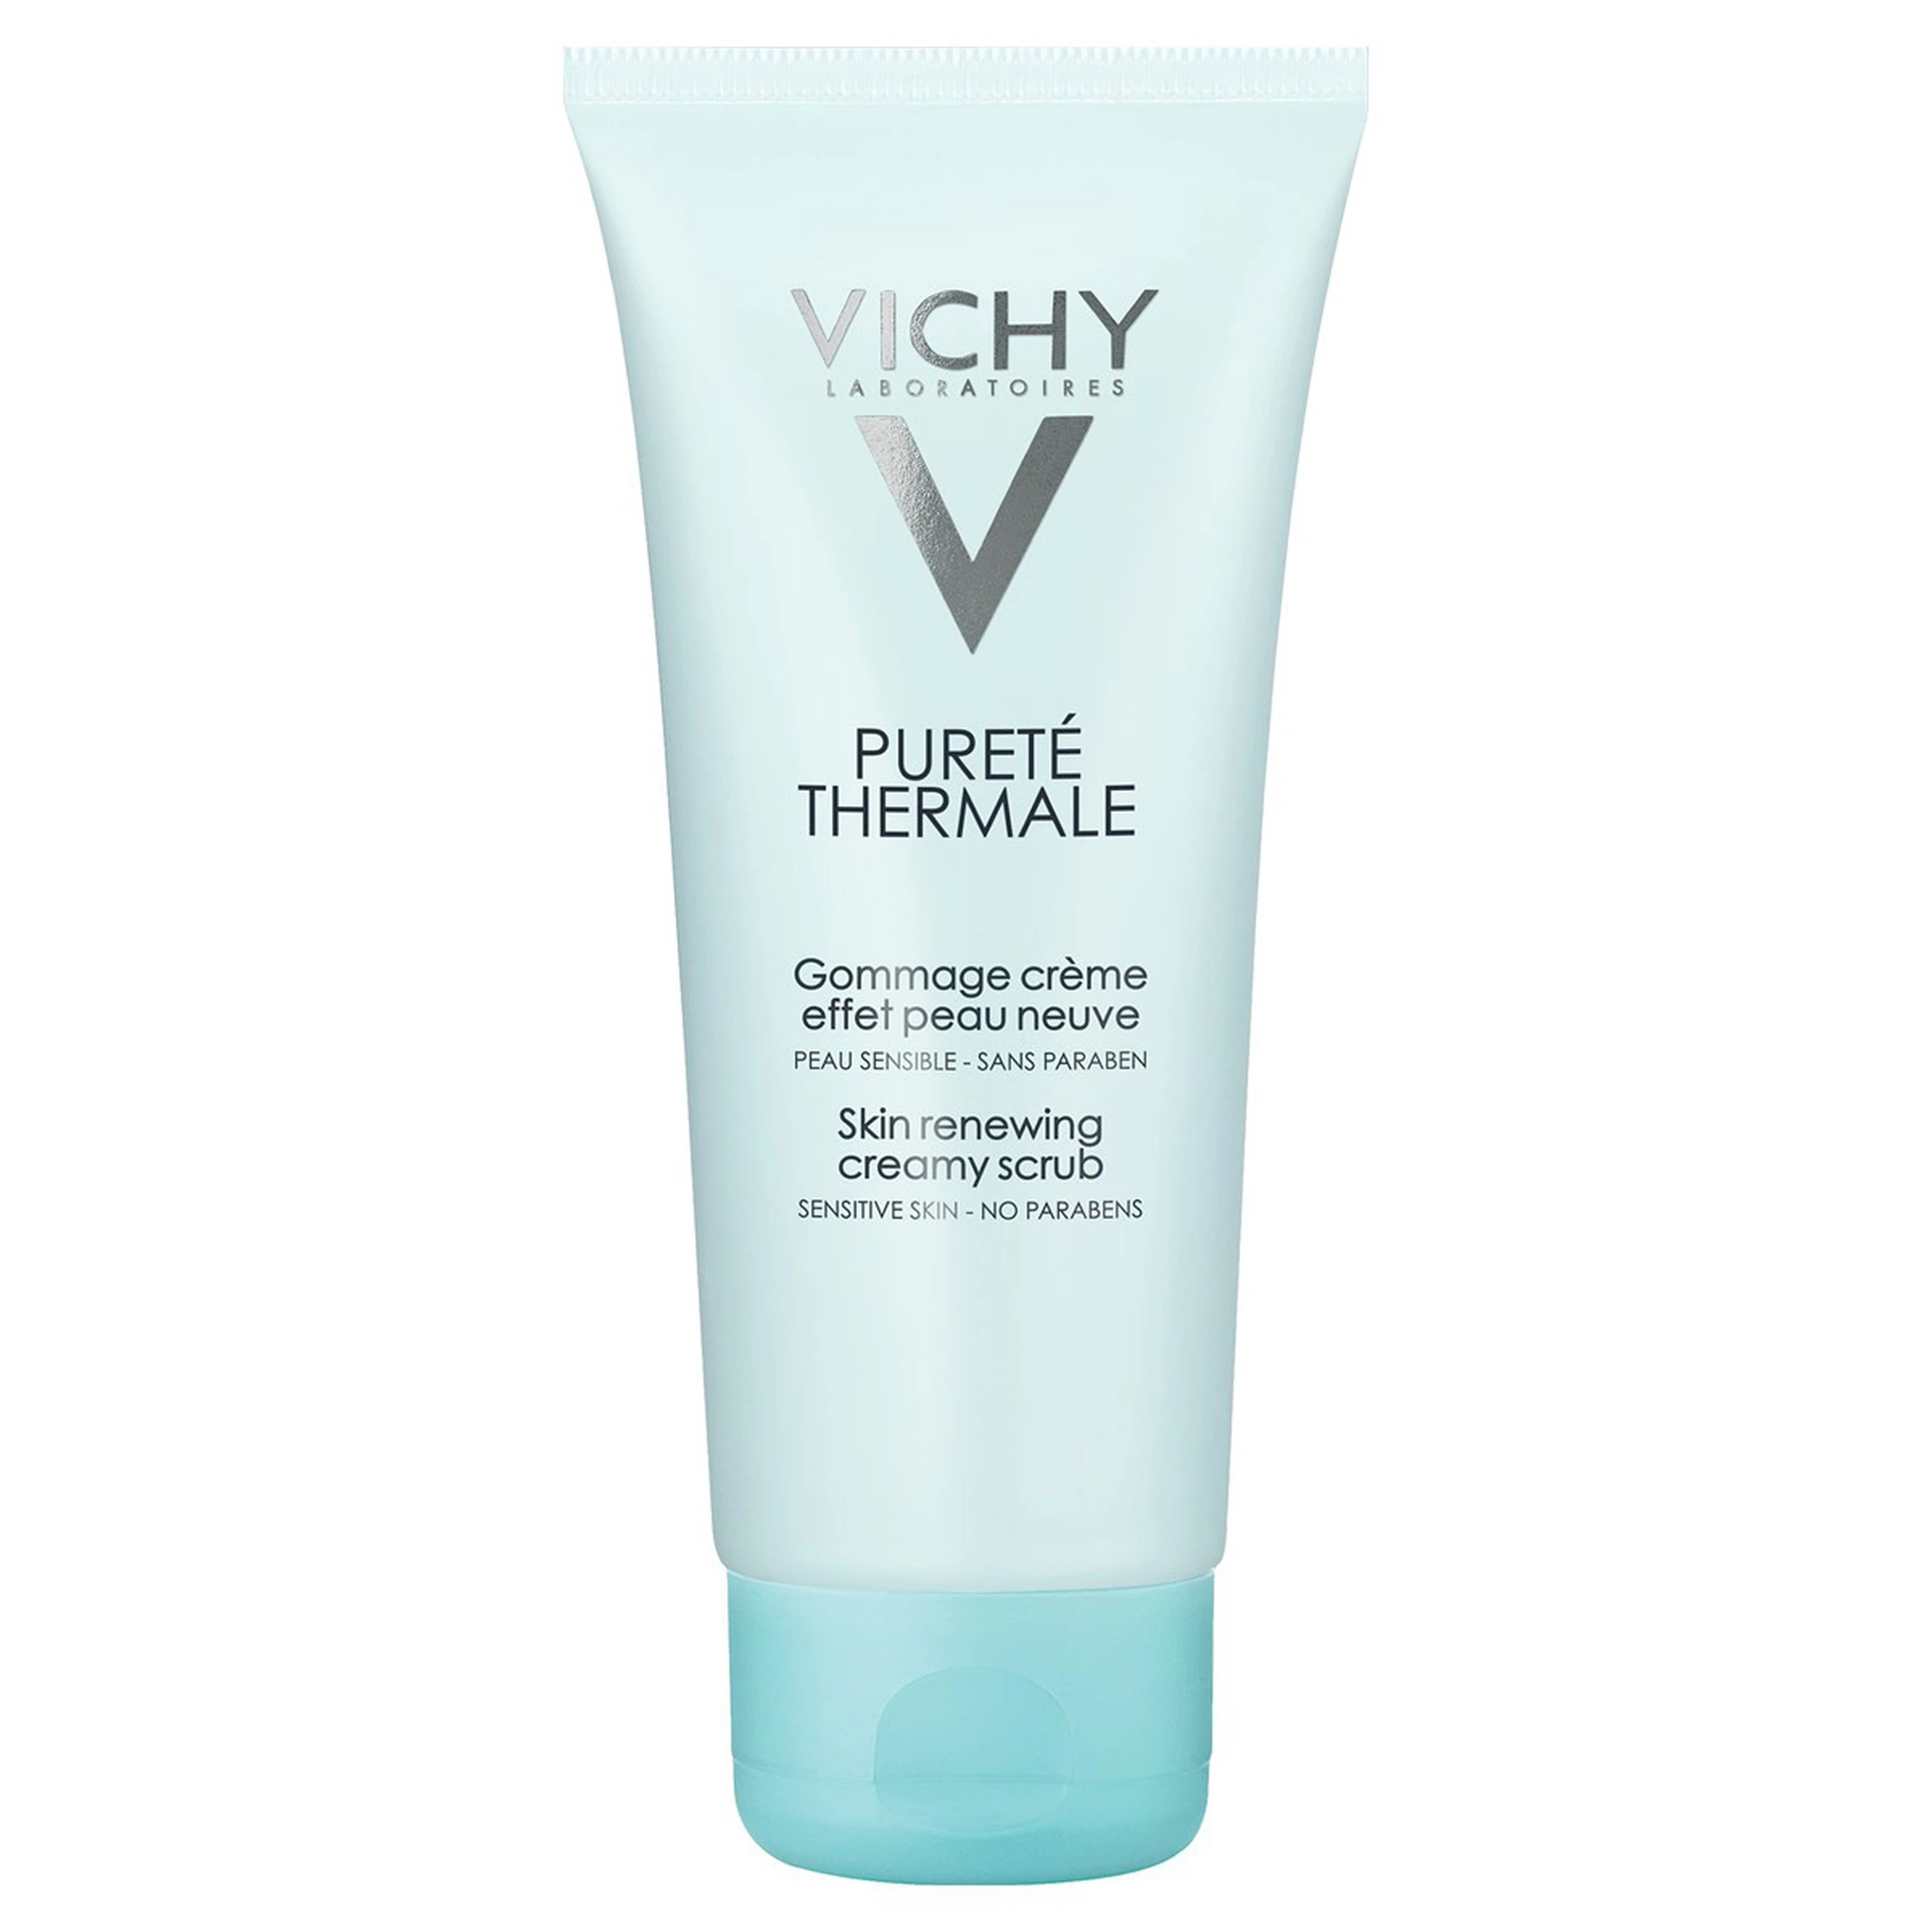 Gel tẩy tế bào chết Vichy Pureté Thermale Skin Renewing Creamy Scrub loại bỏ bụi bẩn, mụn cám, lớp sừng già (75ml)